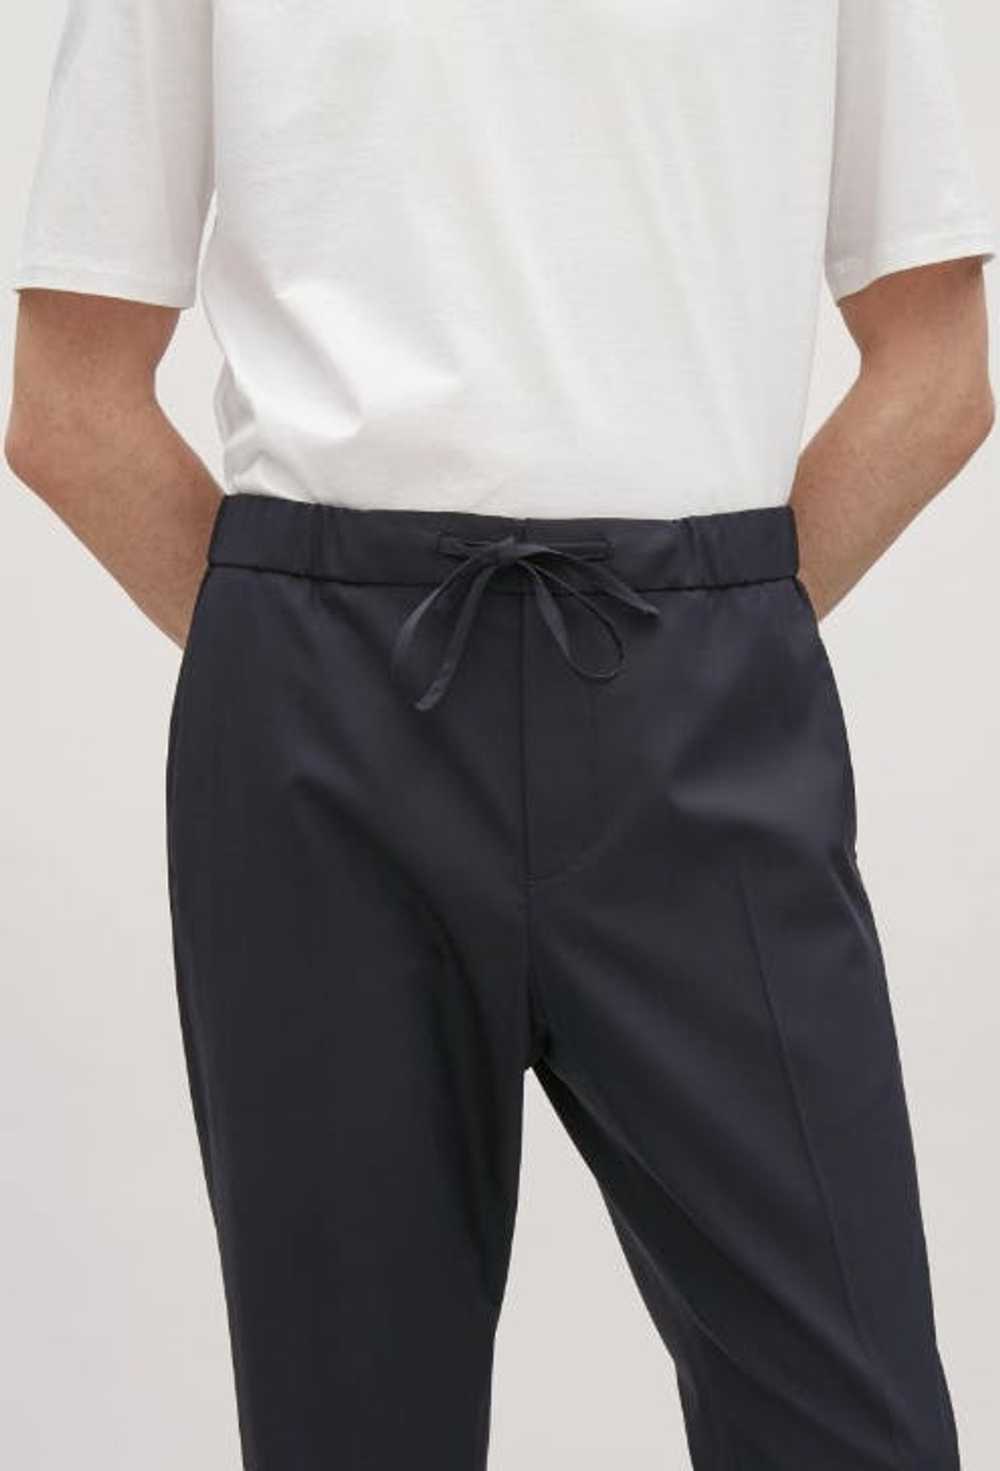 Cos Men's Black Wool Drawstring Tailored Pants - image 2